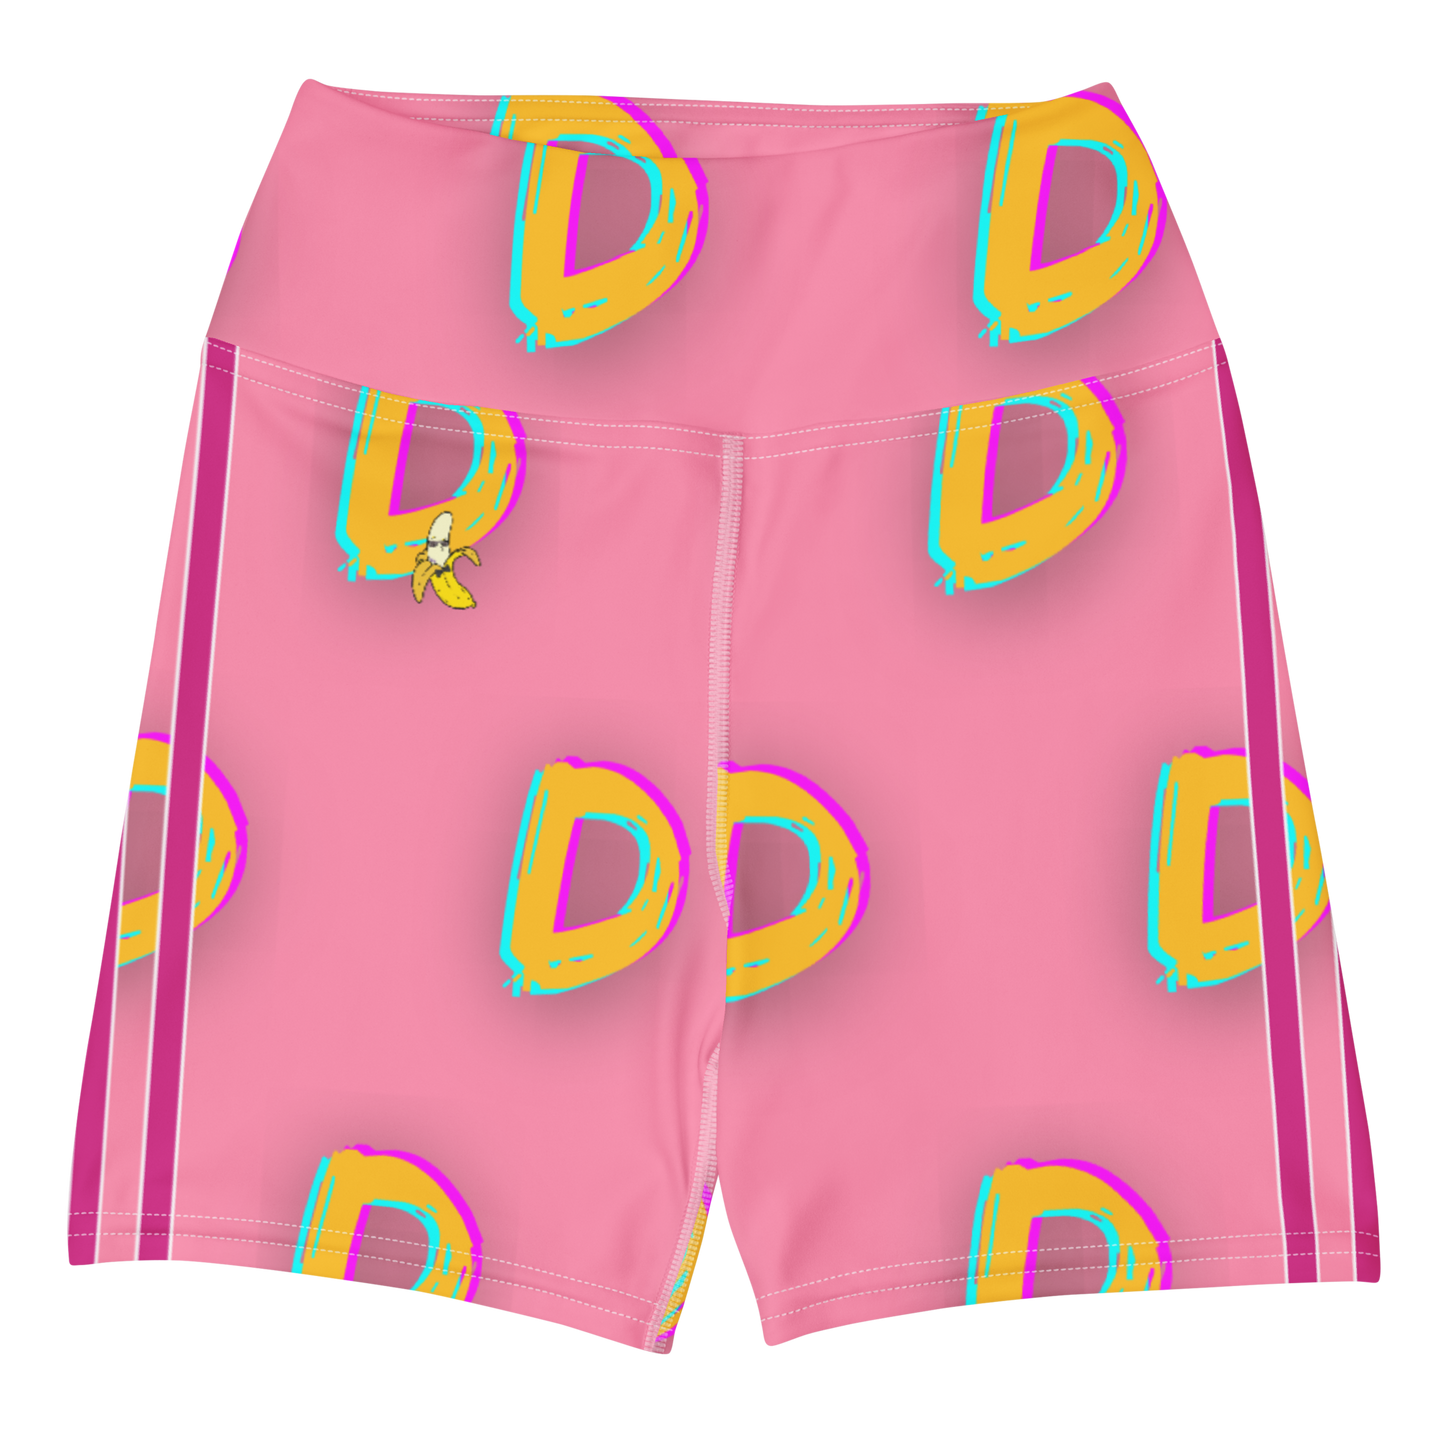 DDDDDDD Yoga Shorts